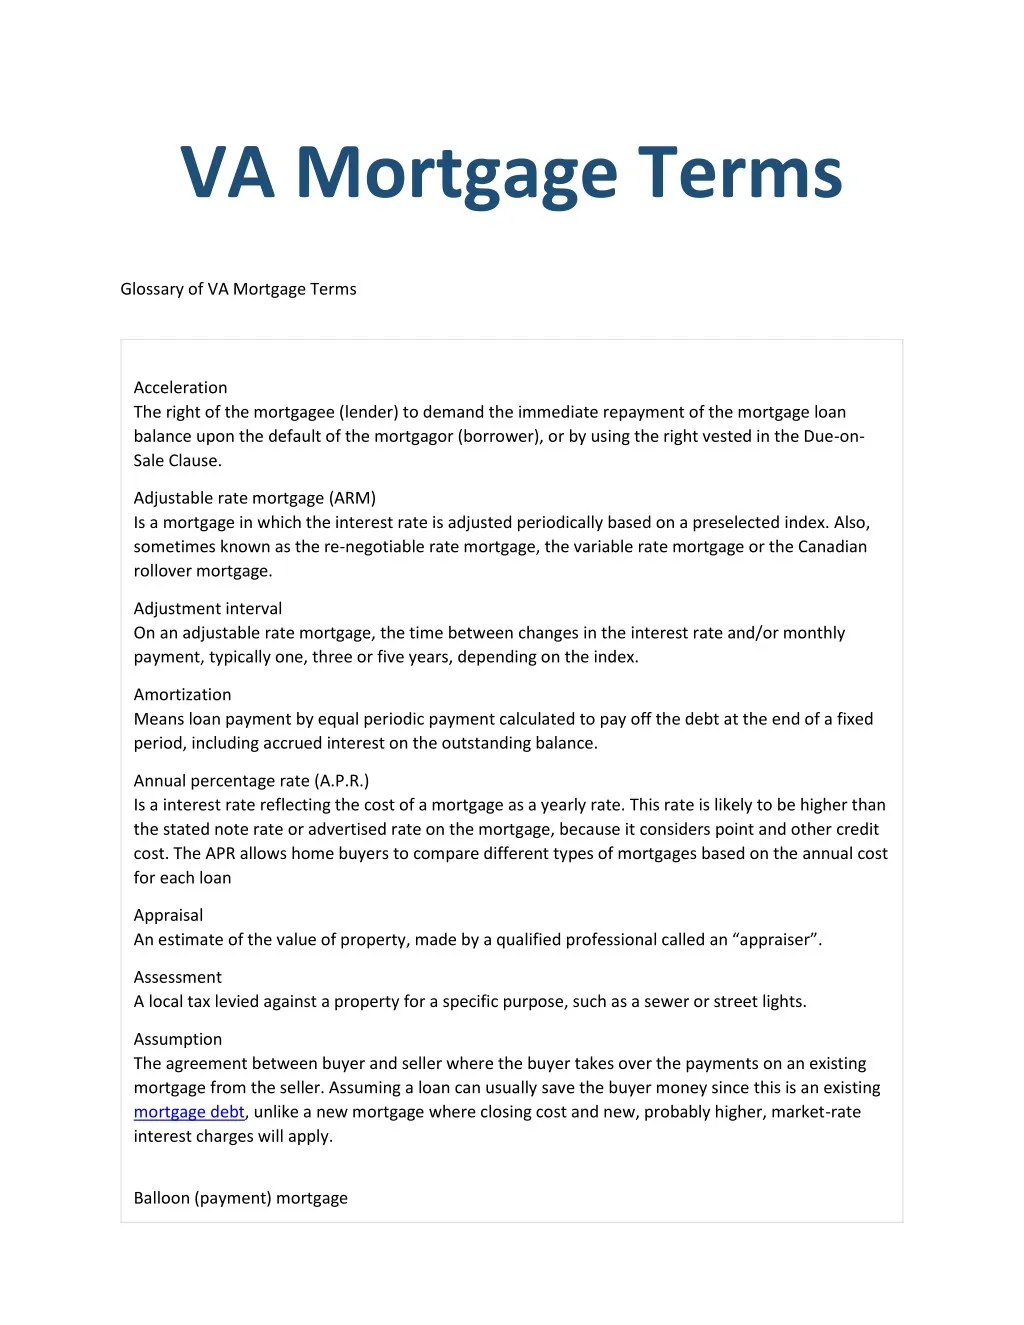 va mortgage terms